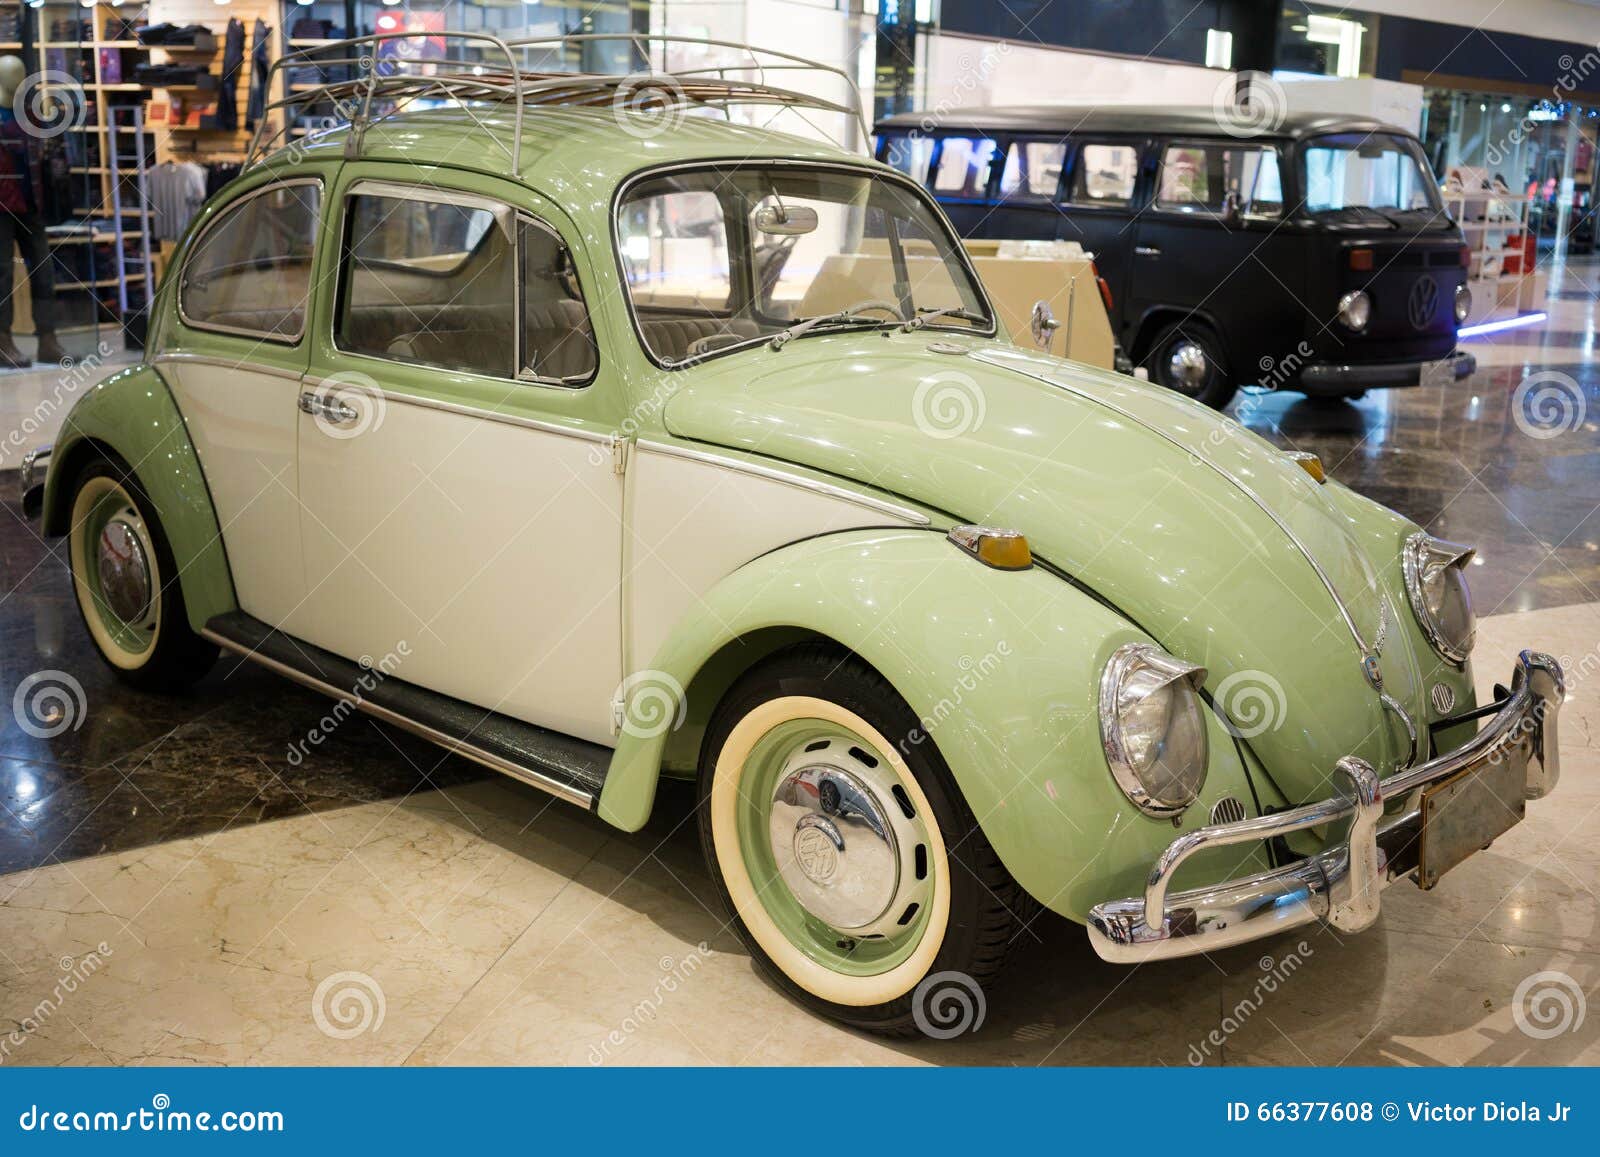 Vintage German Volkswagen Beetle and Transporter Poster